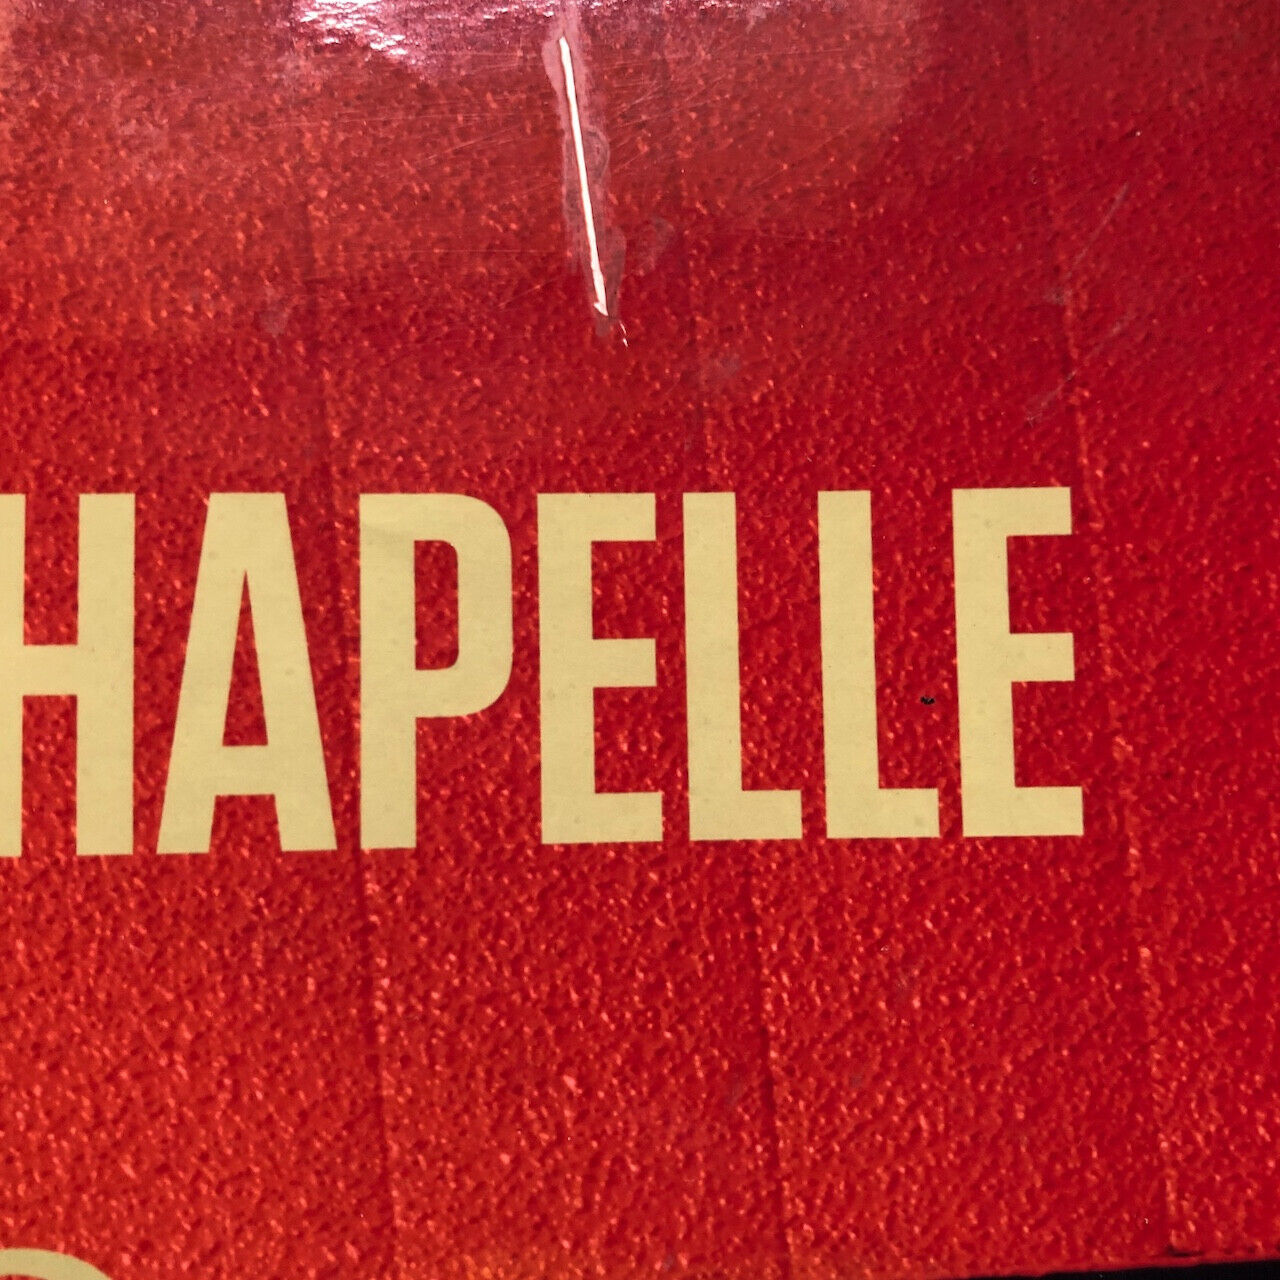 David Lachapelle — affiche photographique publicitaire — Happy socks — 2013.